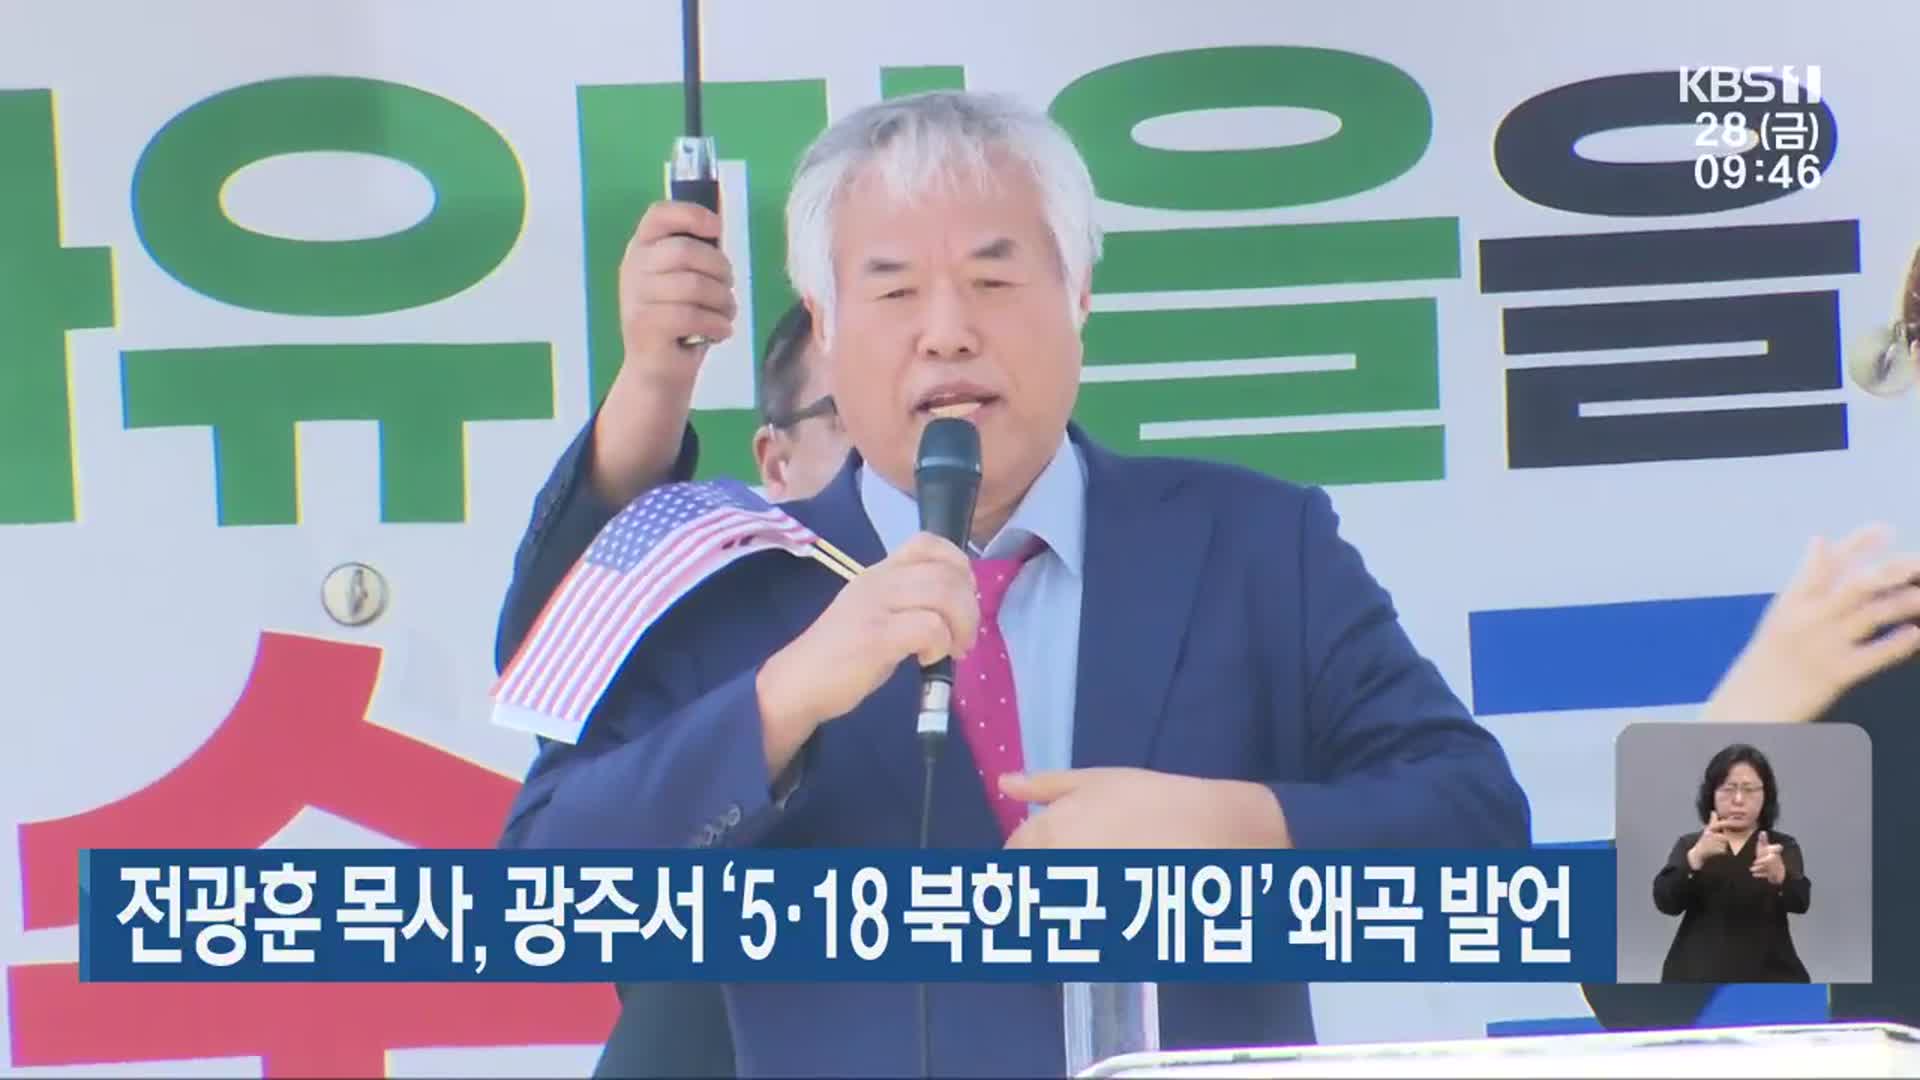 전광훈 목사, 광주서 ‘5·18 북한군 개입’ 왜곡 발언